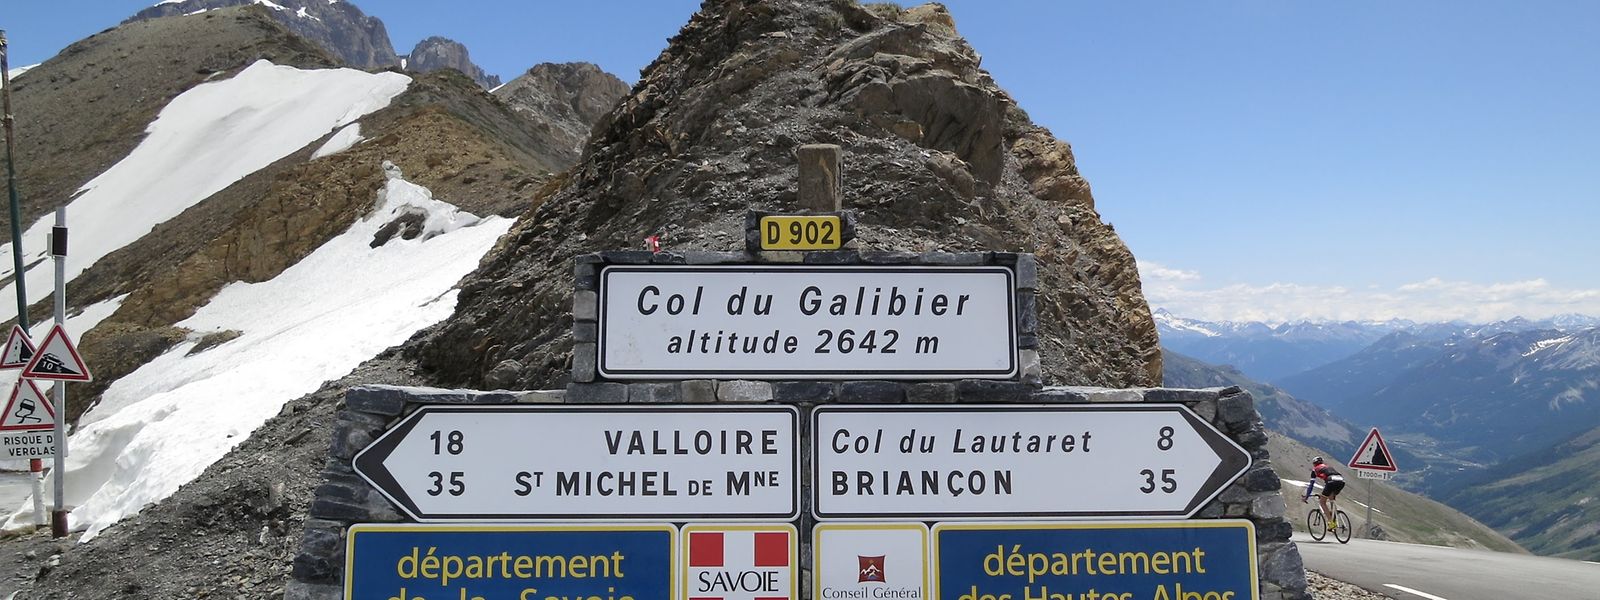 Le col du Galibier (2.642 m) constituera le sommet du 104e Tour de France, lors de la 19e étape